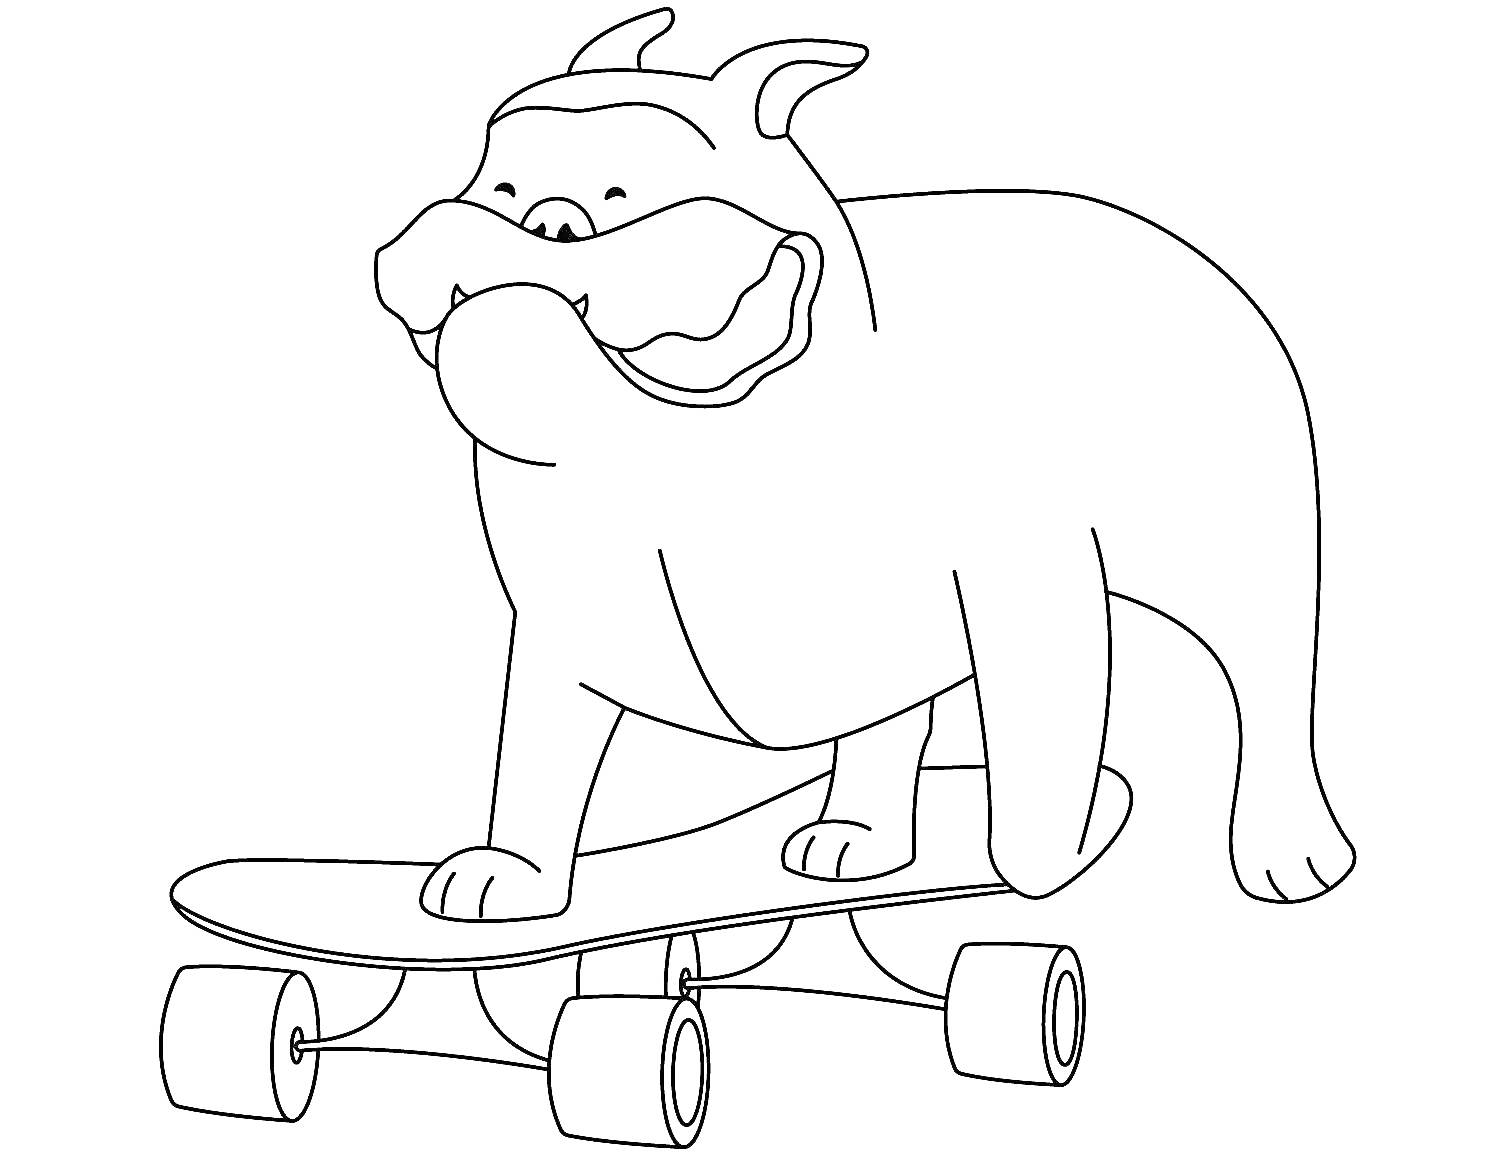 Раскраска Бульдог на скейтборде